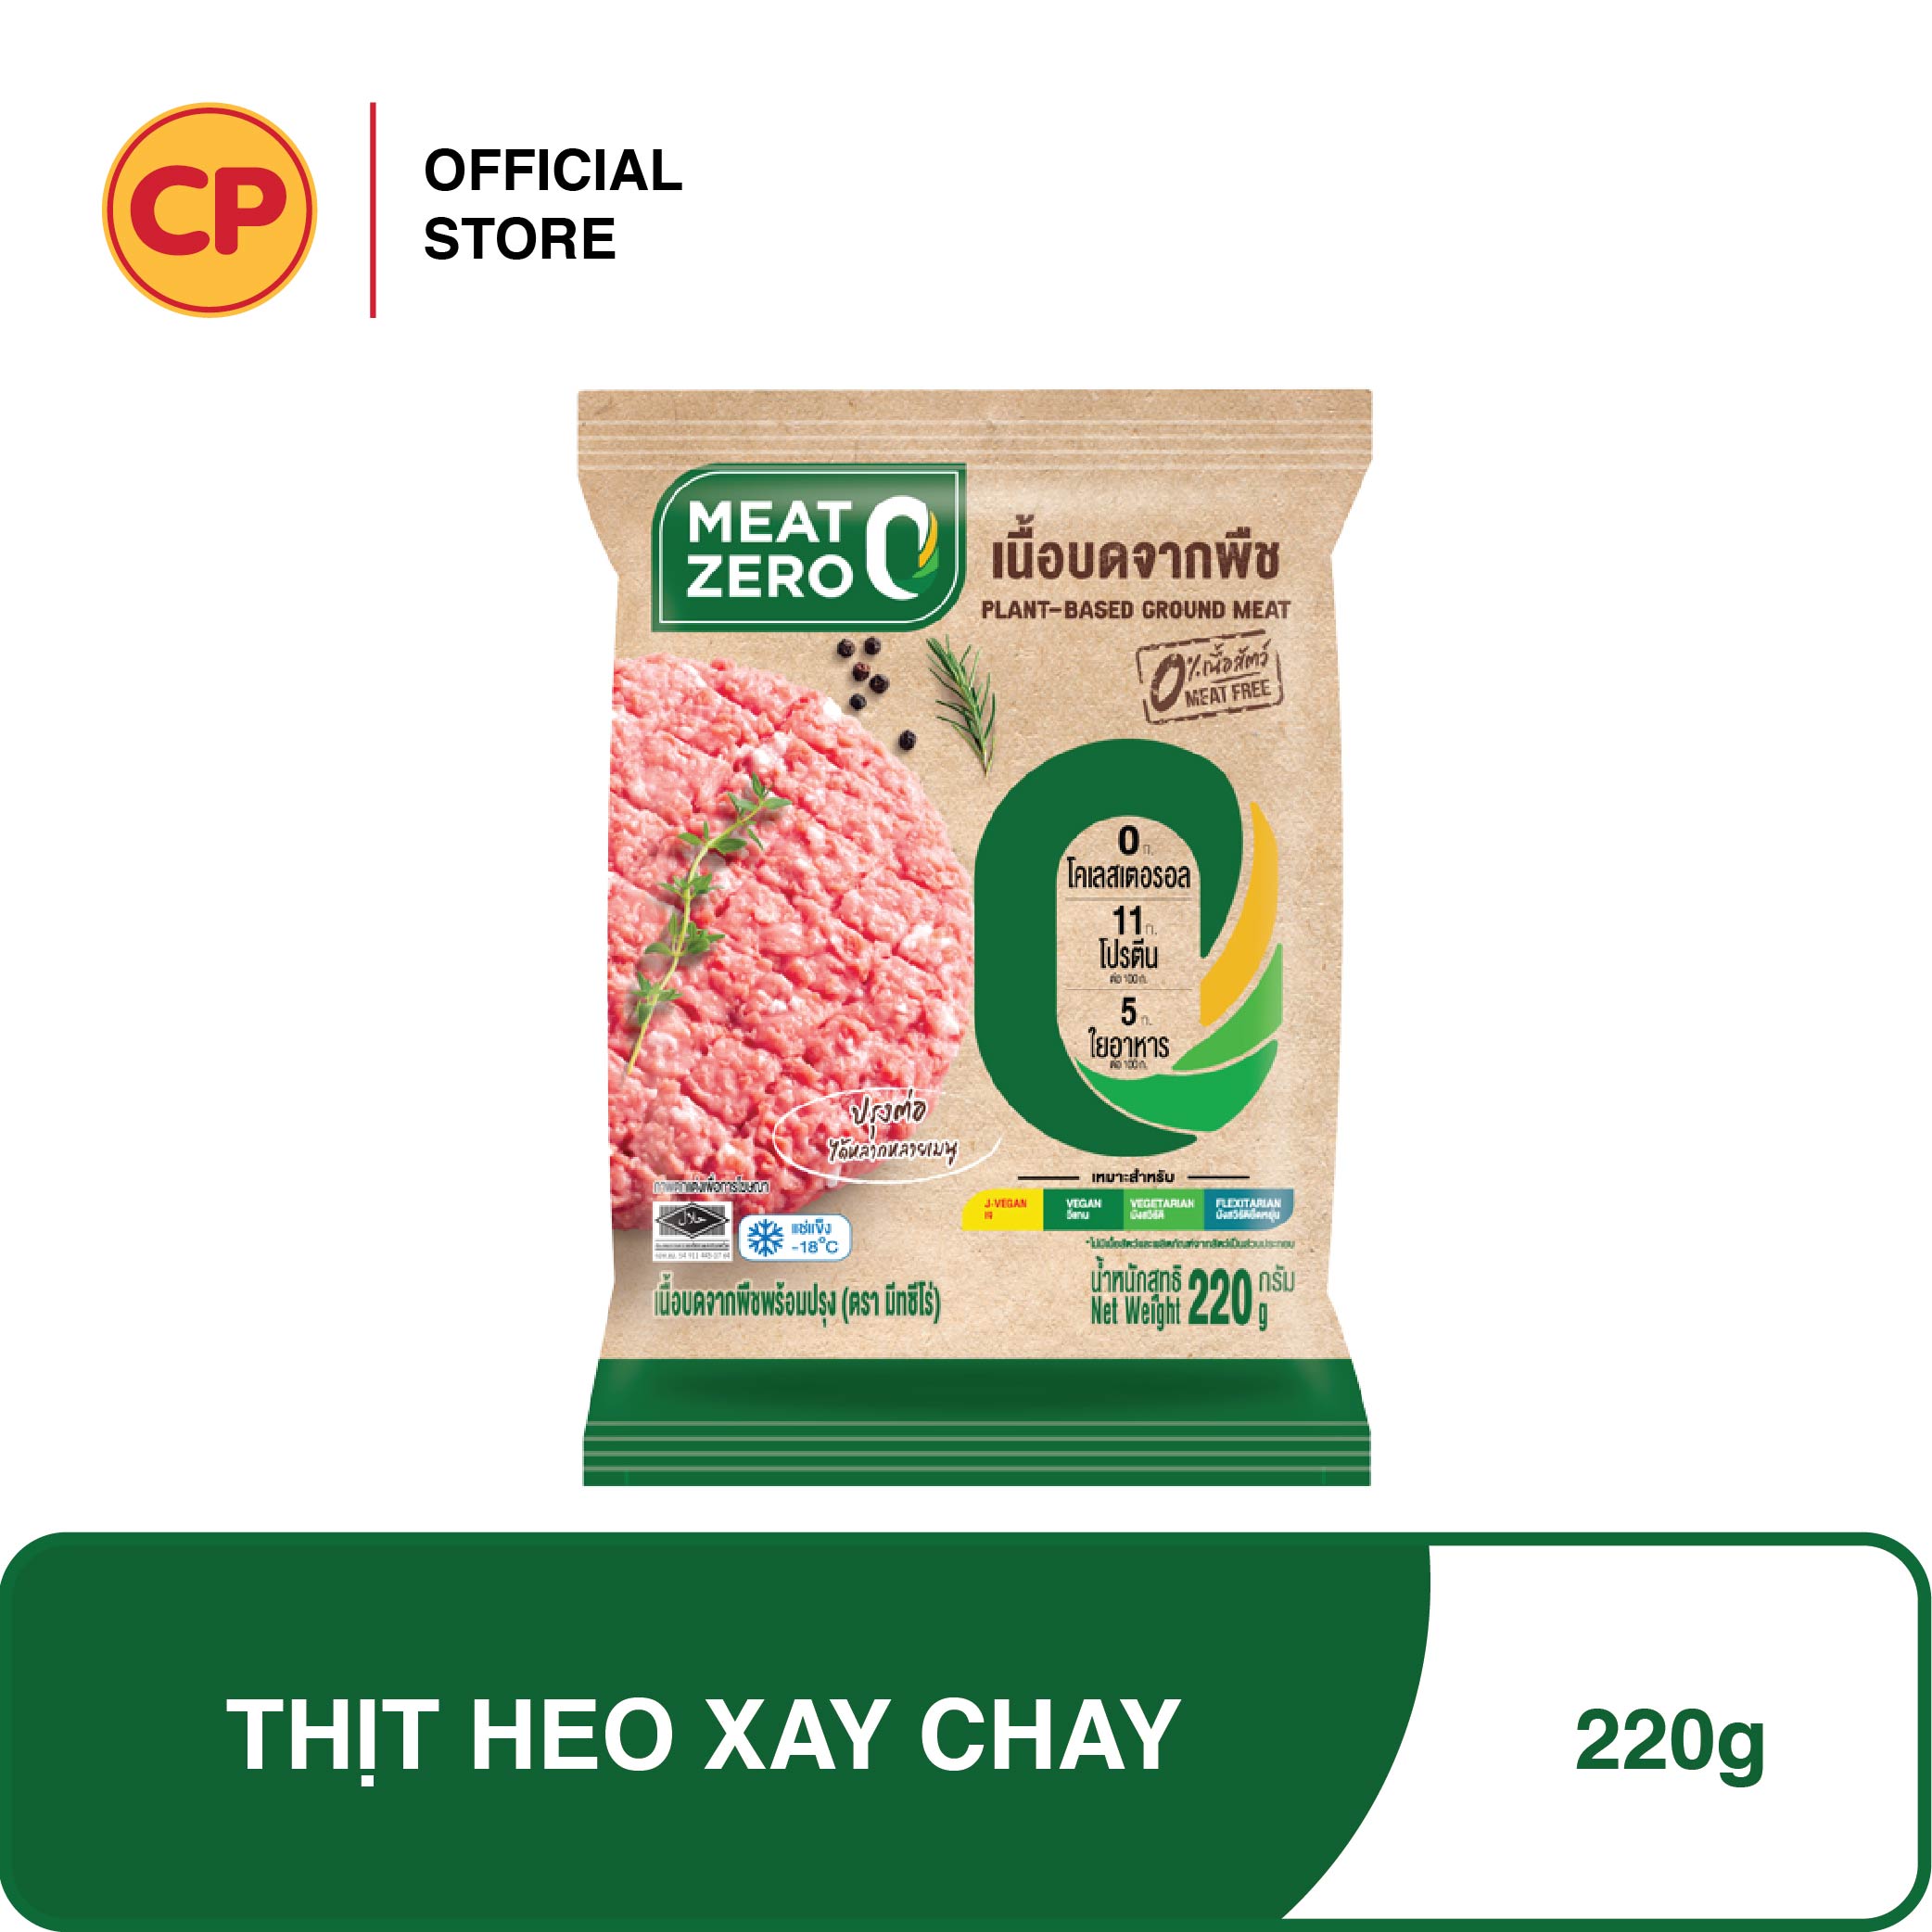 Thịt Heo Xay Chay Cao Cấp - 220g - Thực Phẩm Chay Cao Cấp